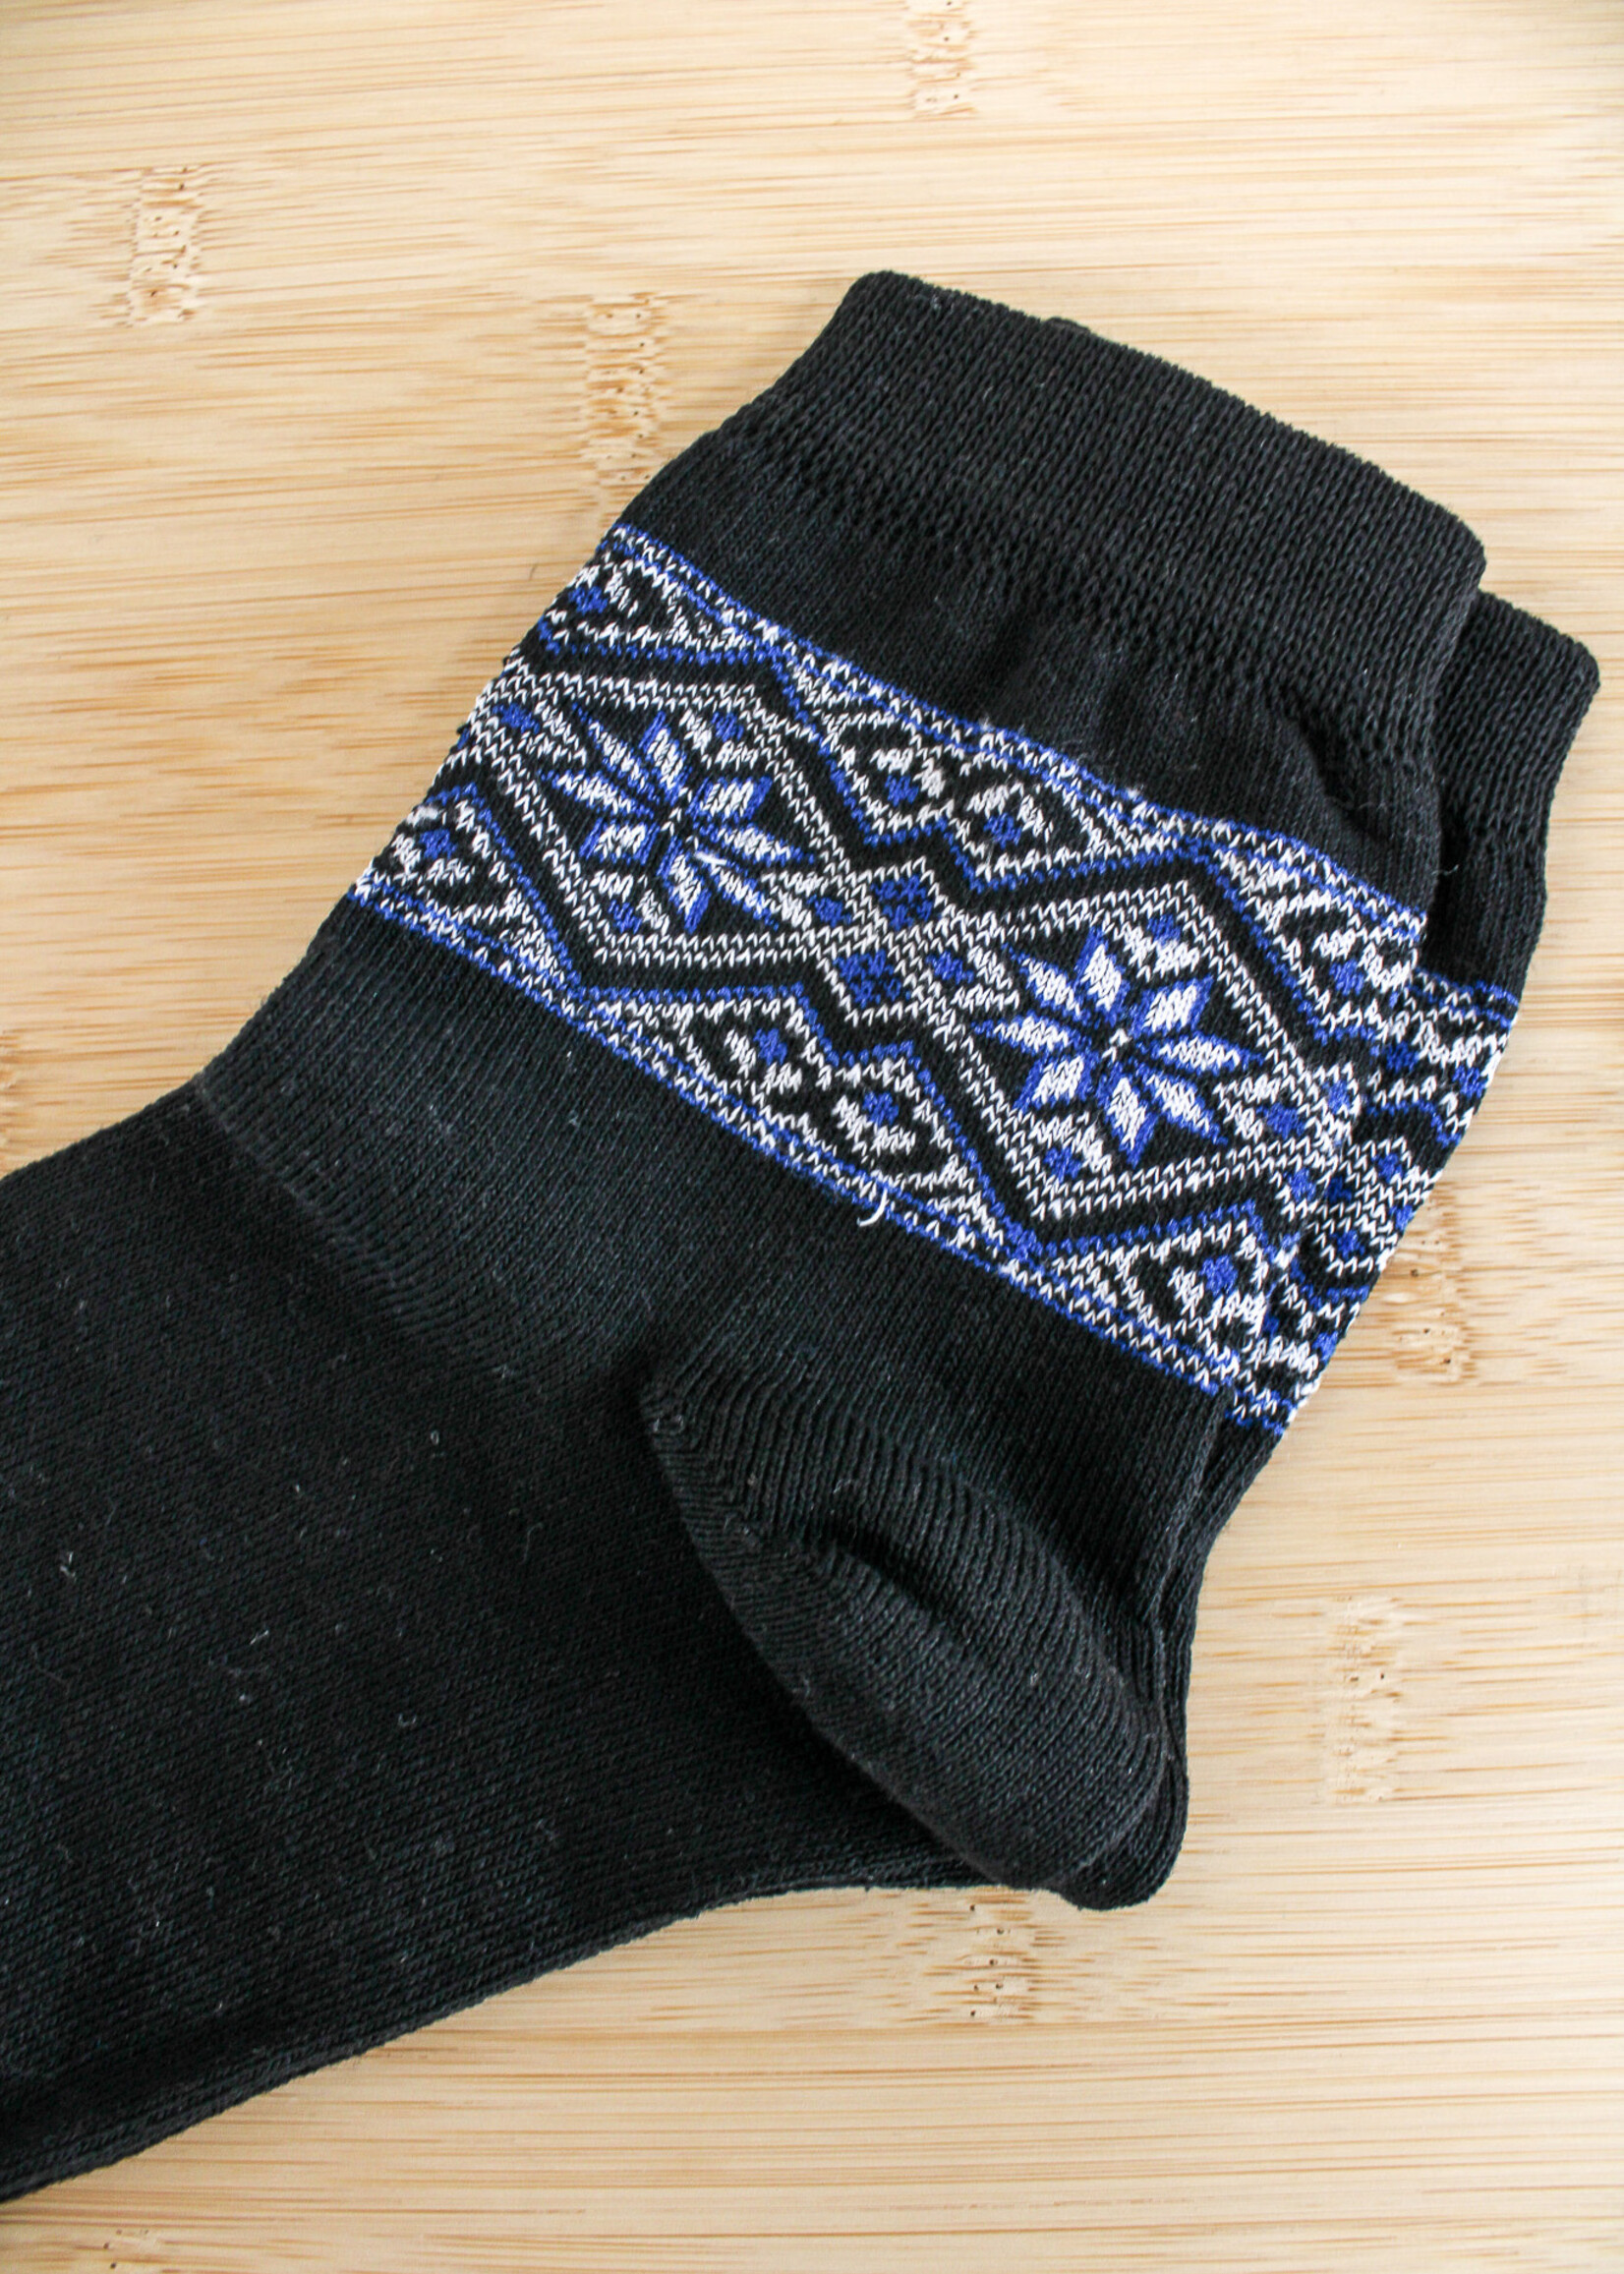 APPAREL- Socks (M) Black Milena, size 27-29